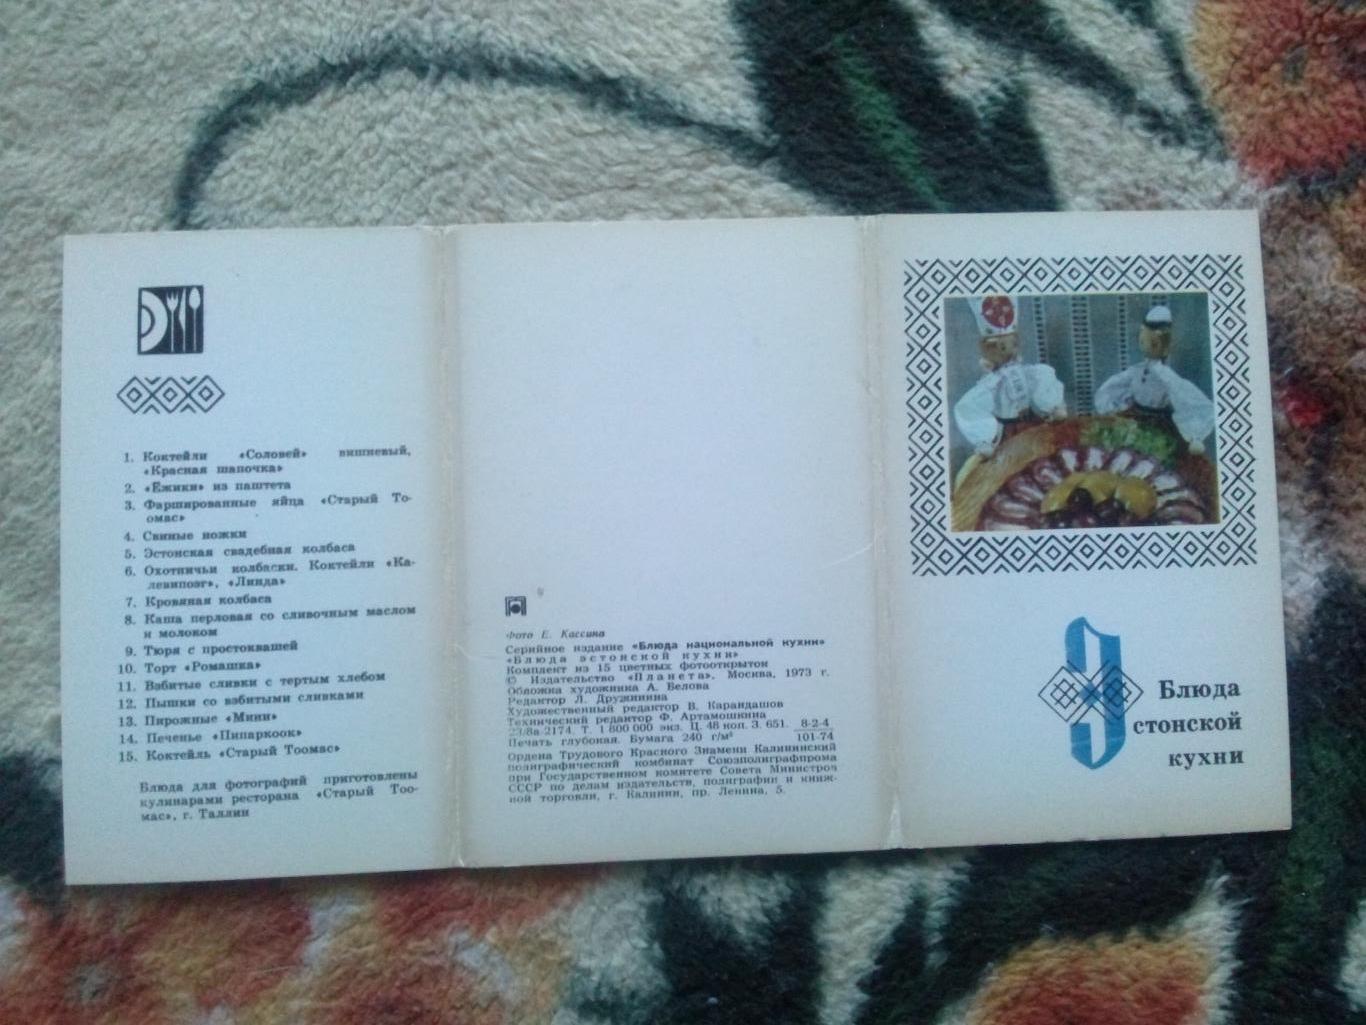 Блюда эстонской кухни 1973 г. полный набор - 15 открыток (Кулинария , рецепты) 1